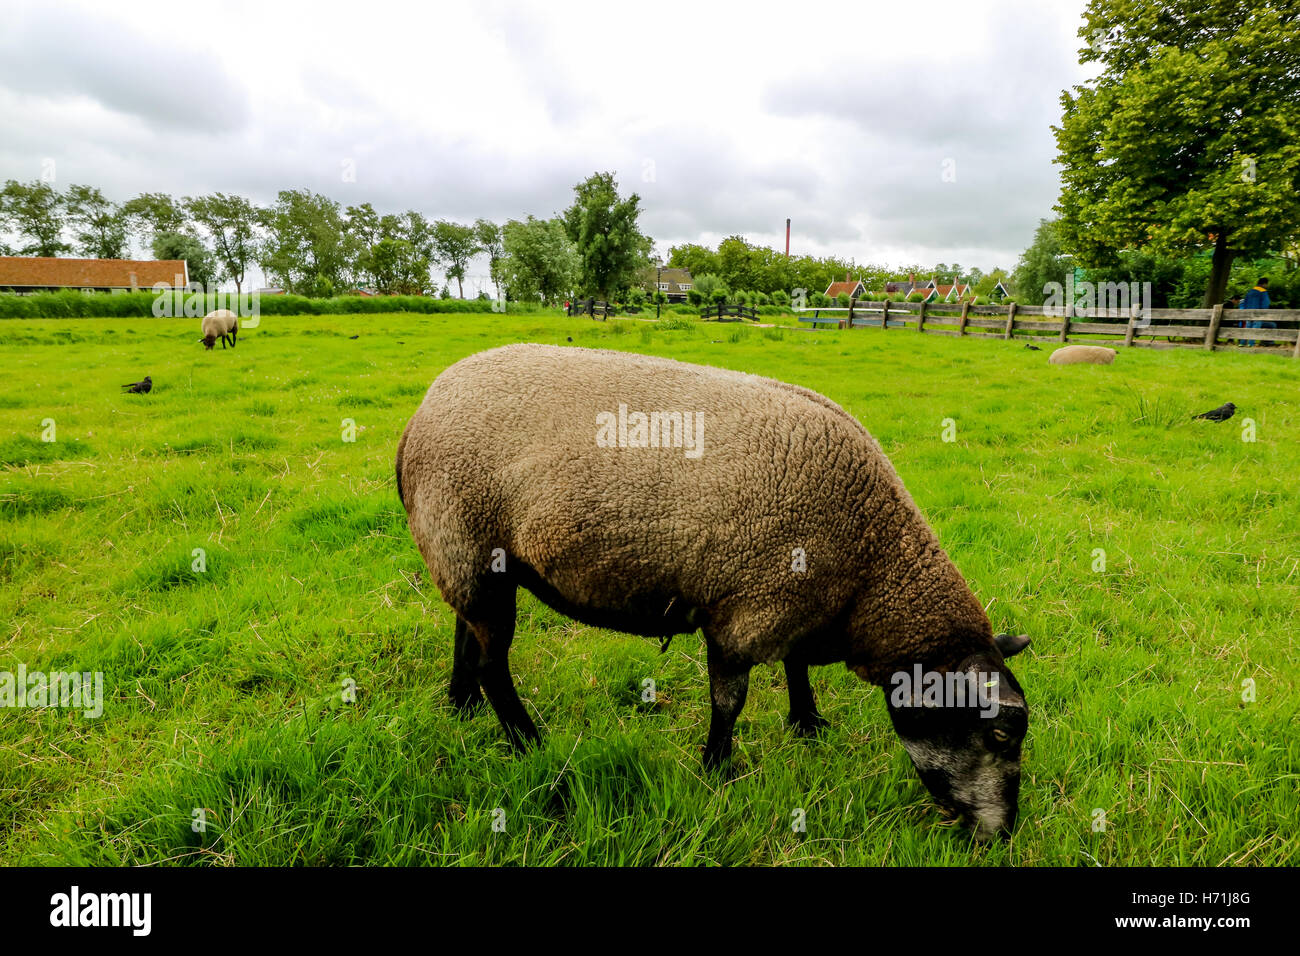 Suffolk sheep in a green field Stock Photo